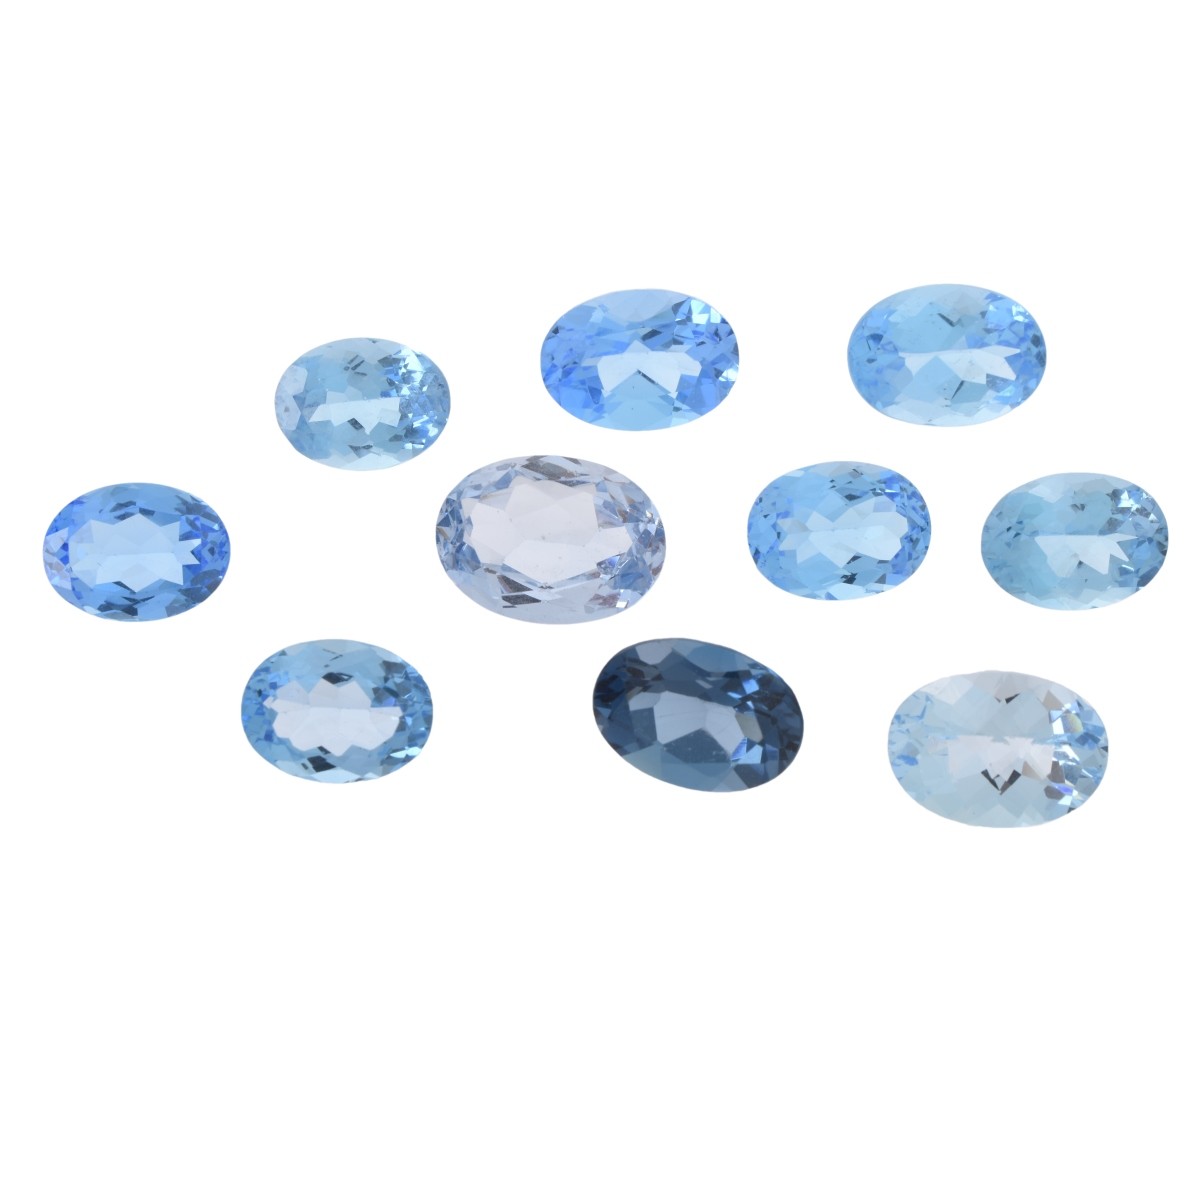 Ten London Blue Opal Stones